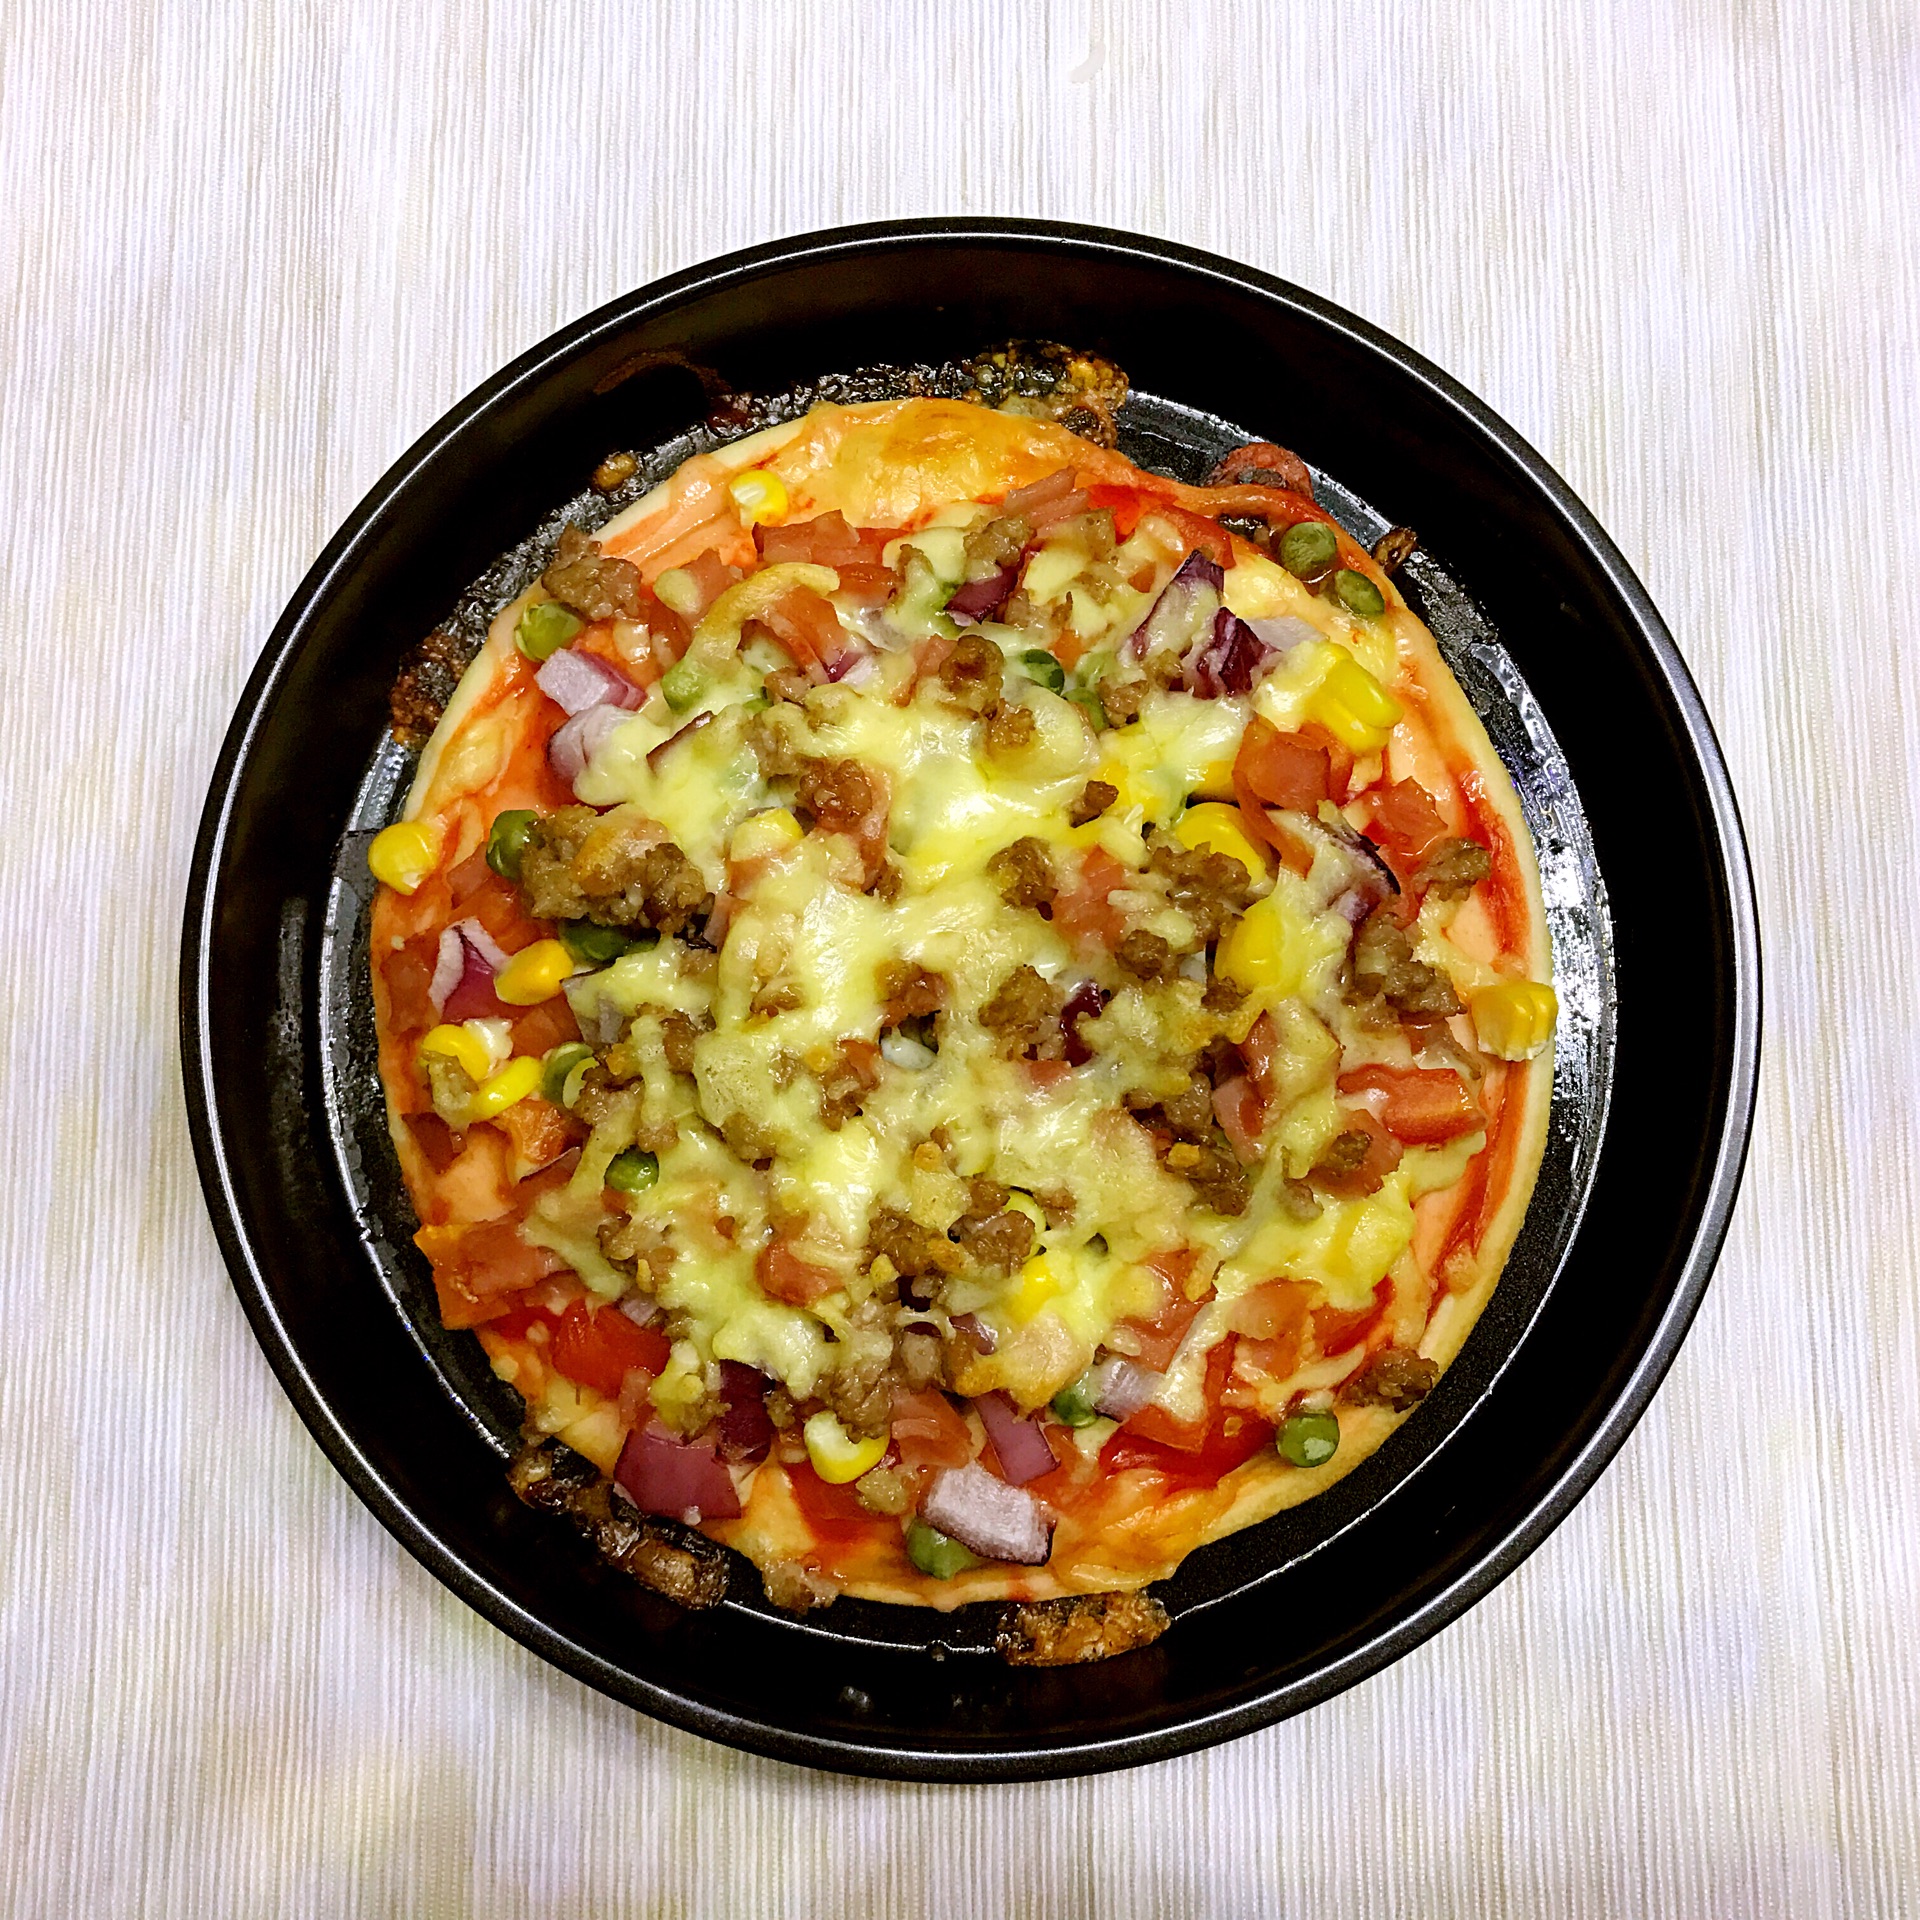 火腿披萨怎么做_火腿披萨的做法_Ann小叶子_豆果美食